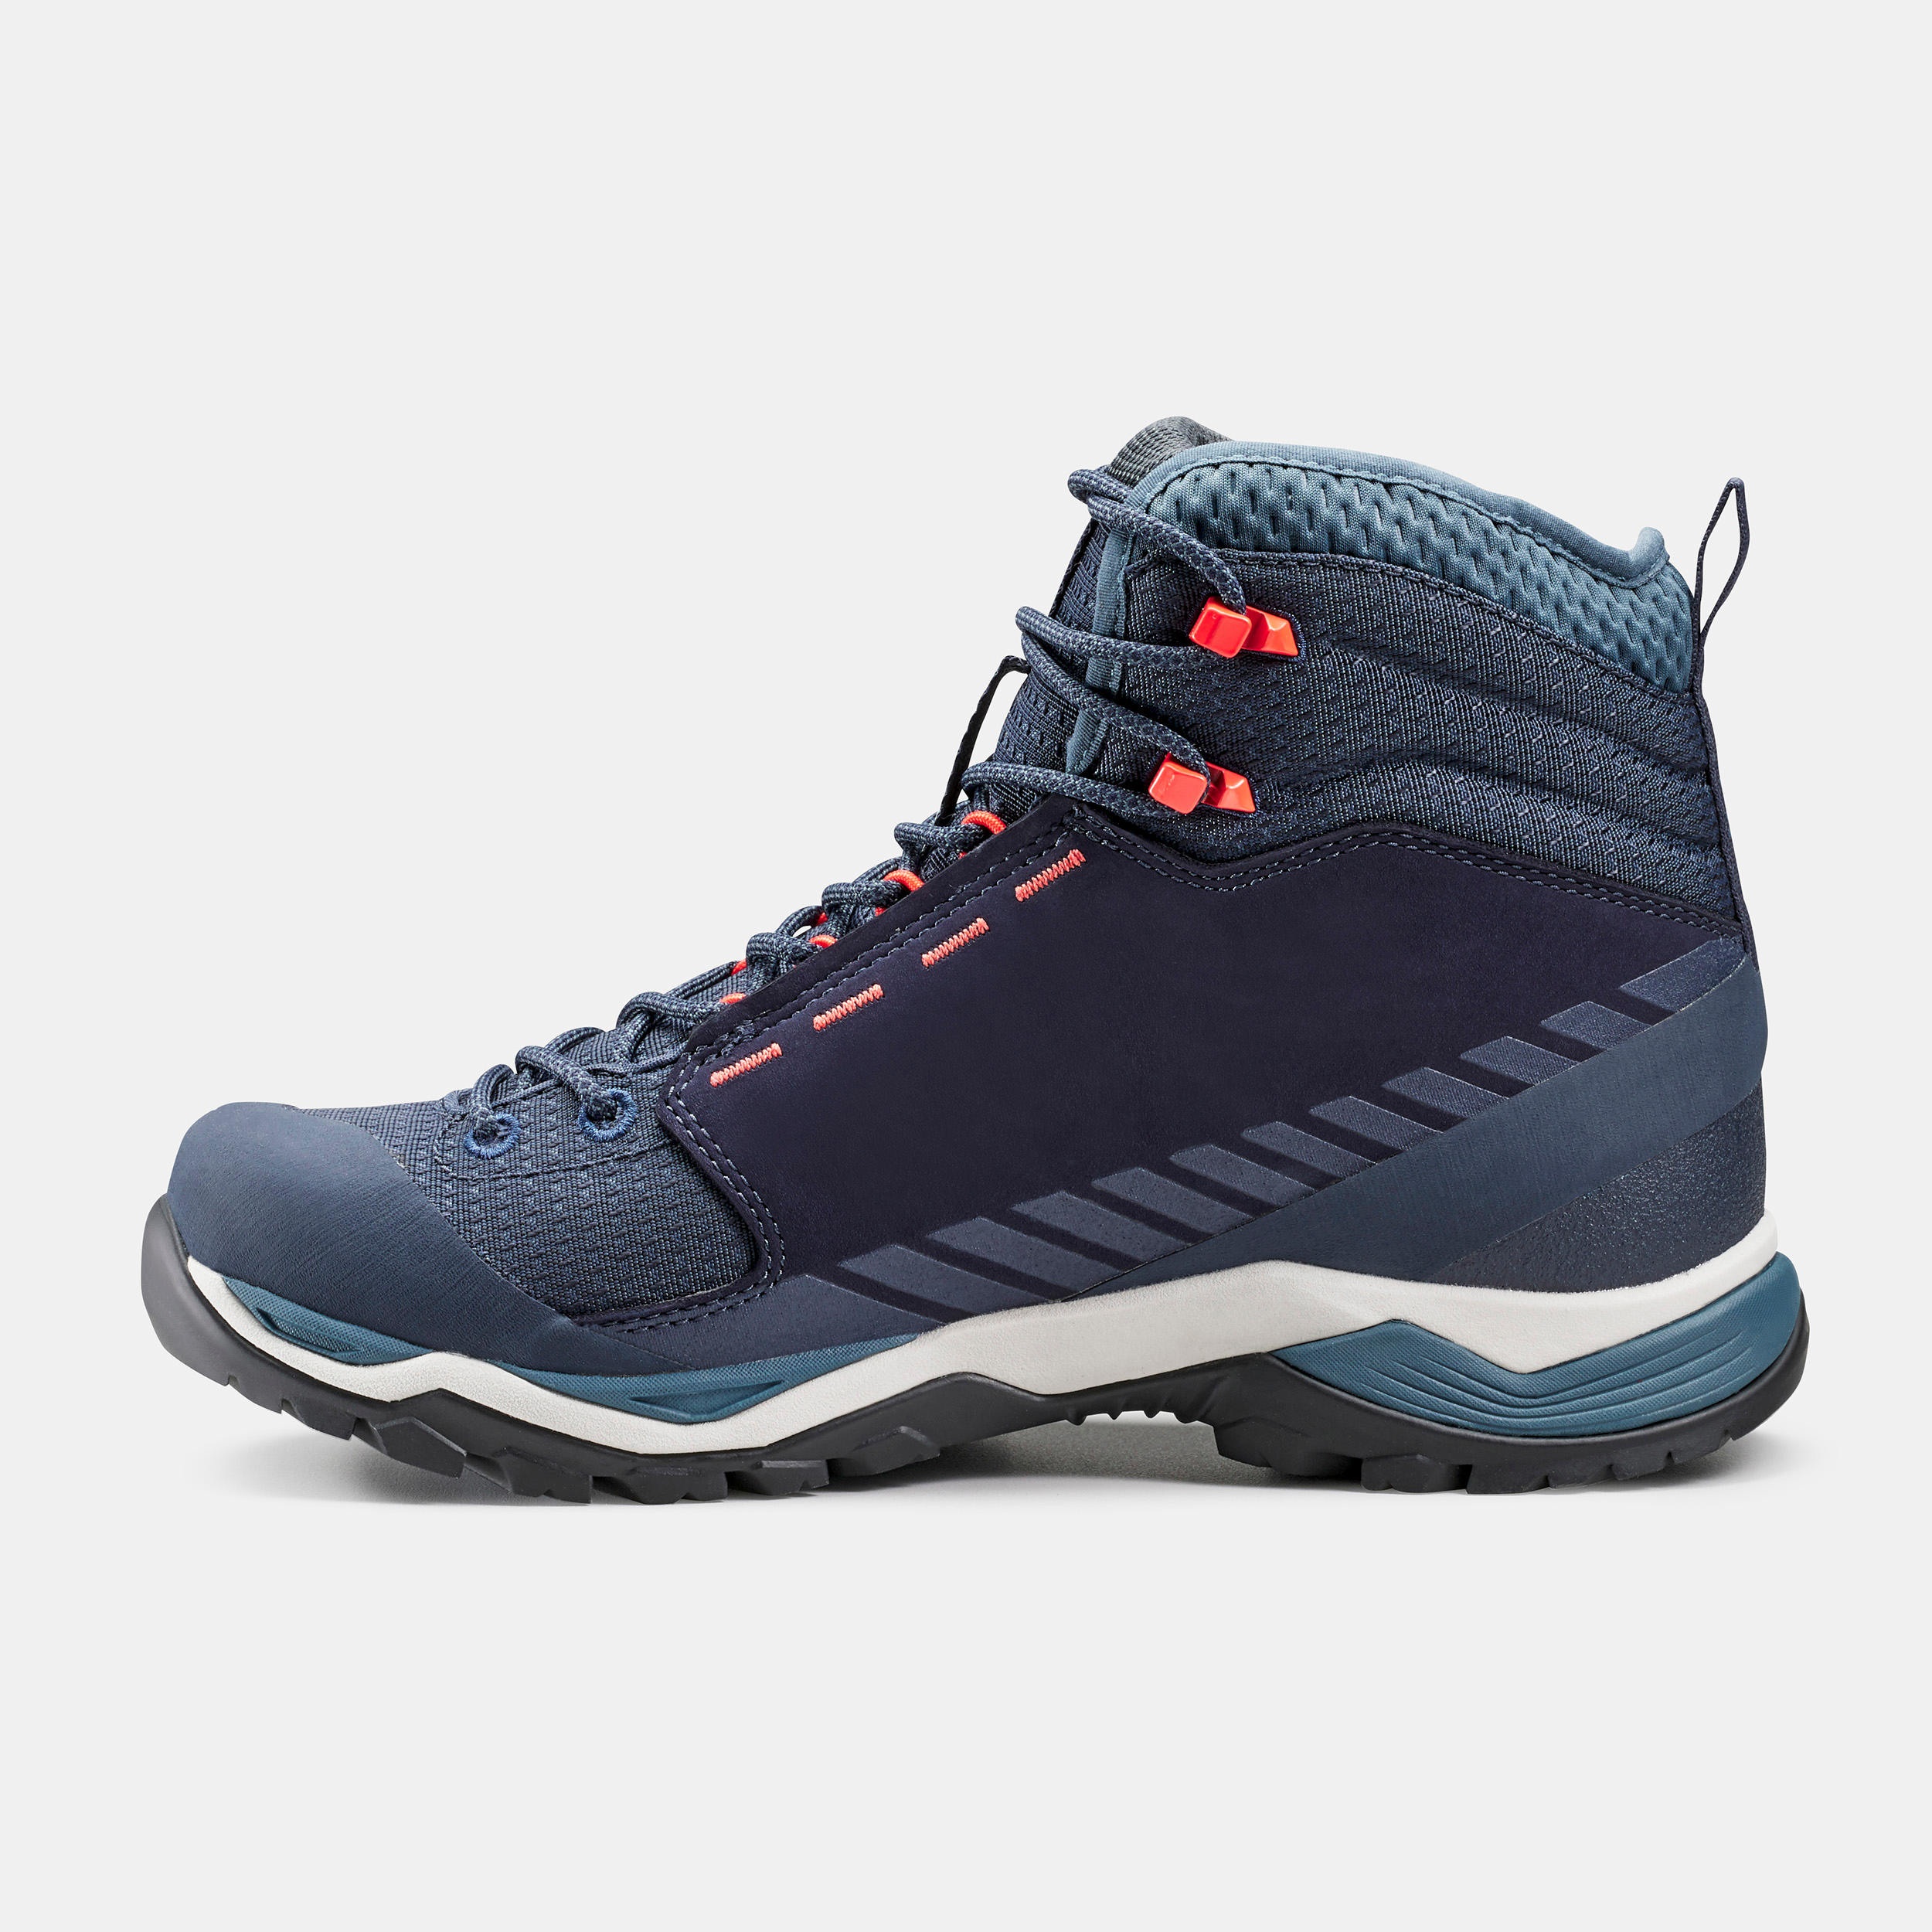 Women’s waterproof mountain walking boots - MH900 Mid - Blue 2/8